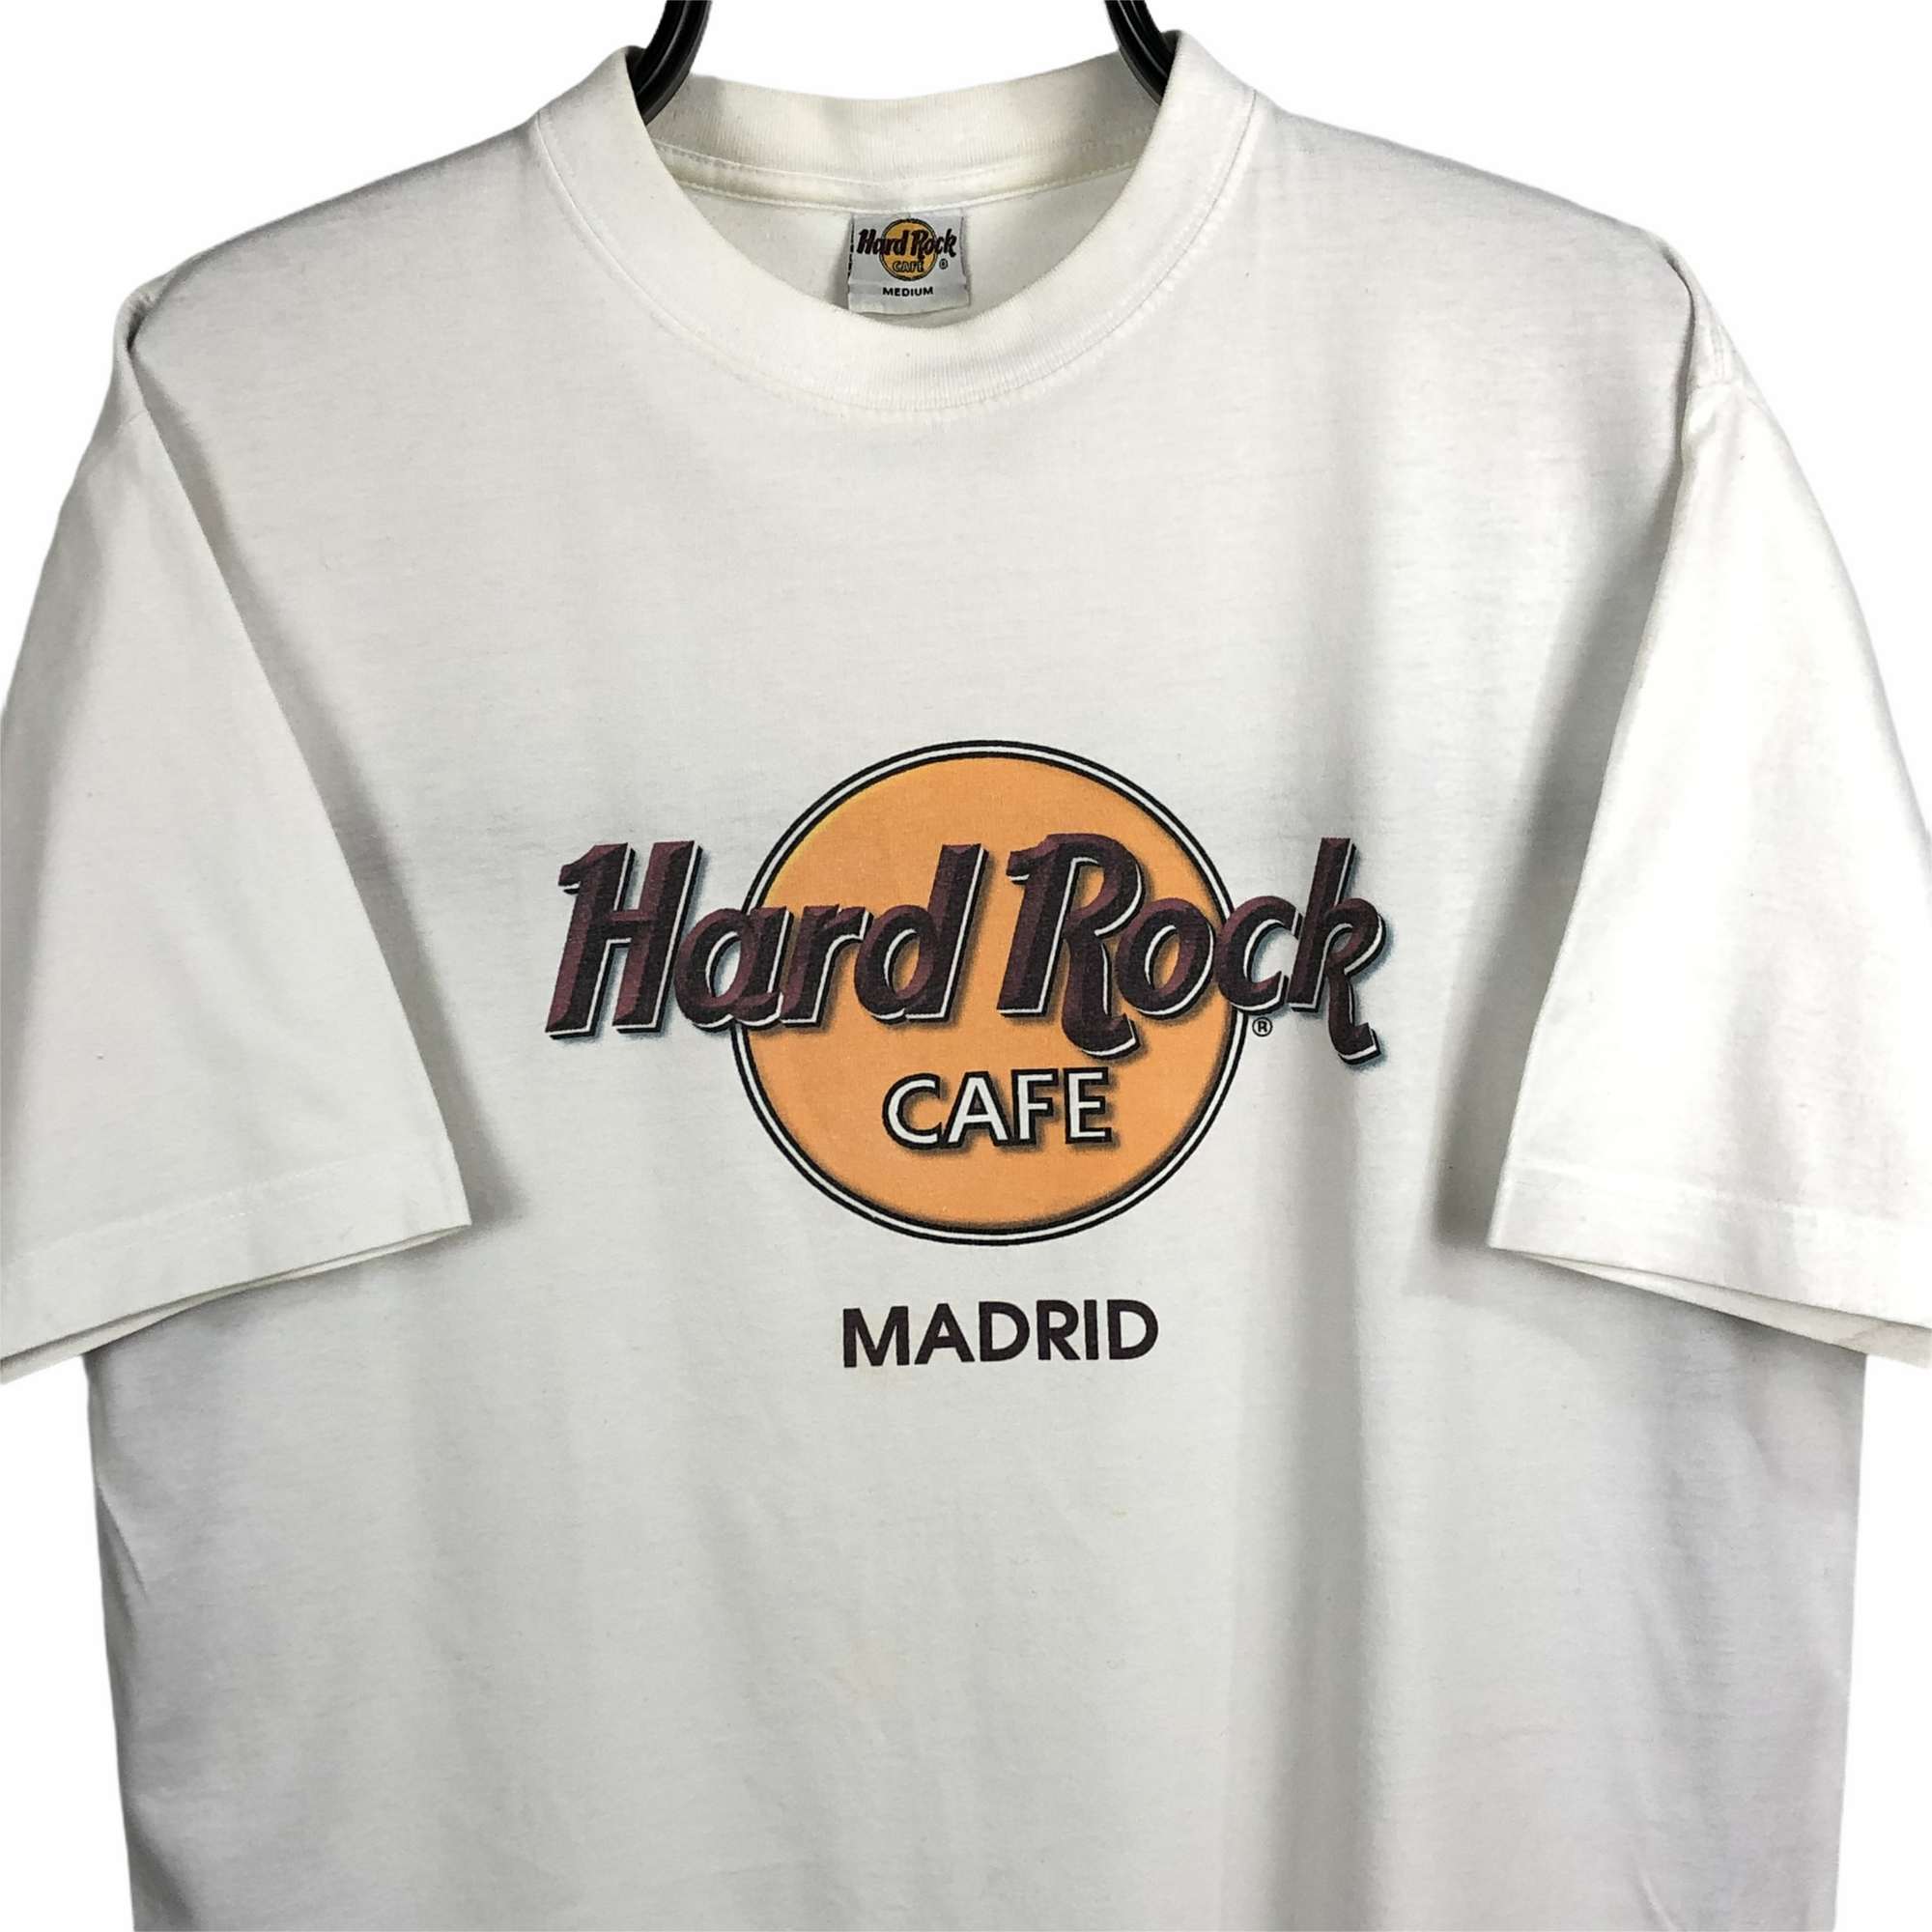 Vintage Hard Rock Cafe Madrid Tee - Men's Medium/Women's Large